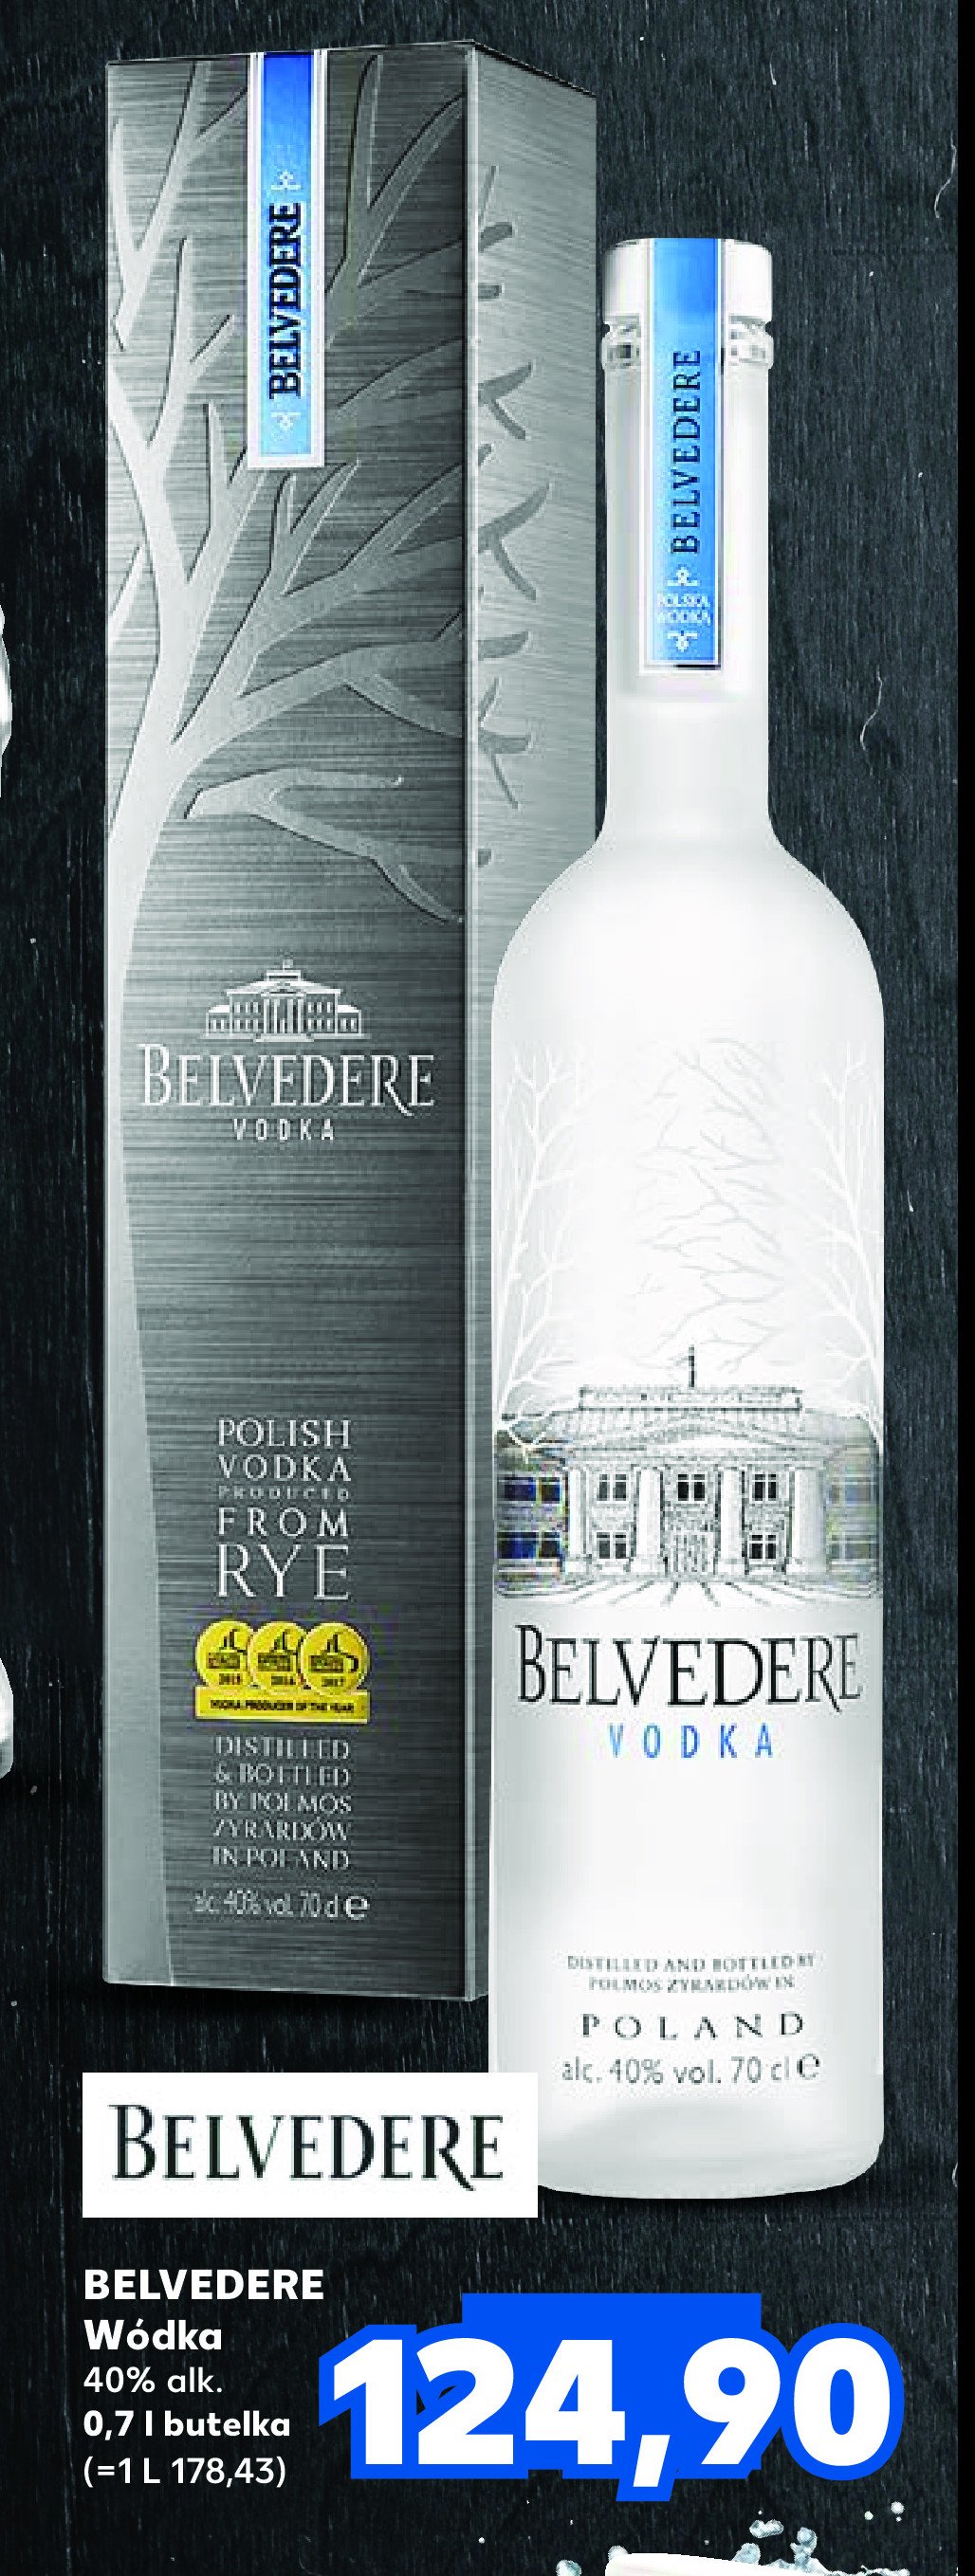 Wódka - kartonik Belvedere promocja